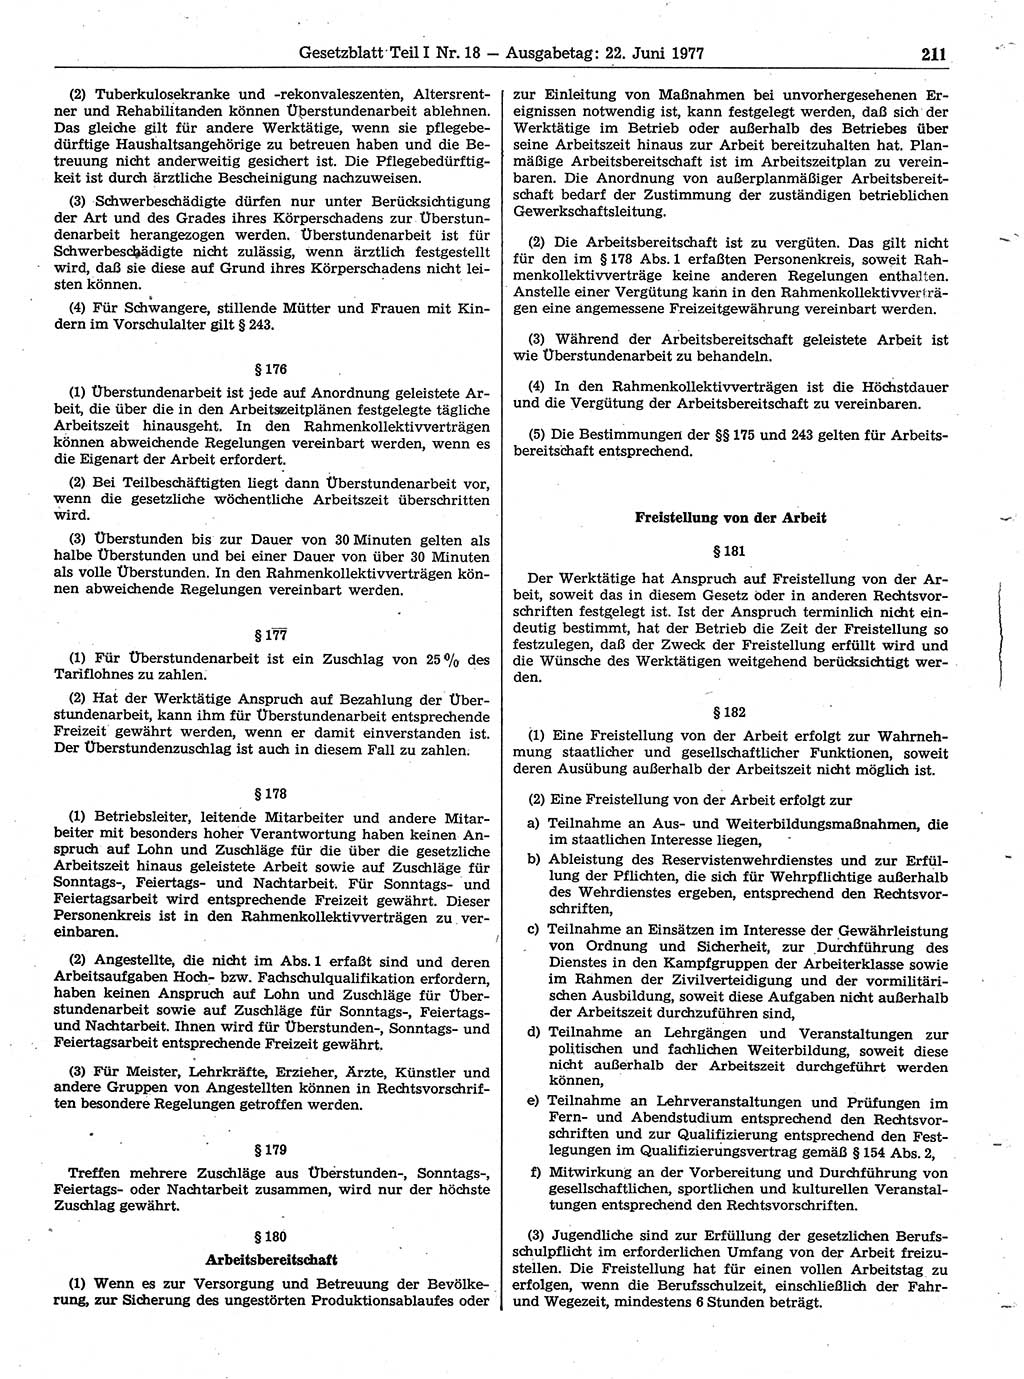 Gesetzblatt (GBl.) der Deutschen Demokratischen Republik (DDR) Teil Ⅰ 1977, Seite 211 (GBl. DDR Ⅰ 1977, S. 211)